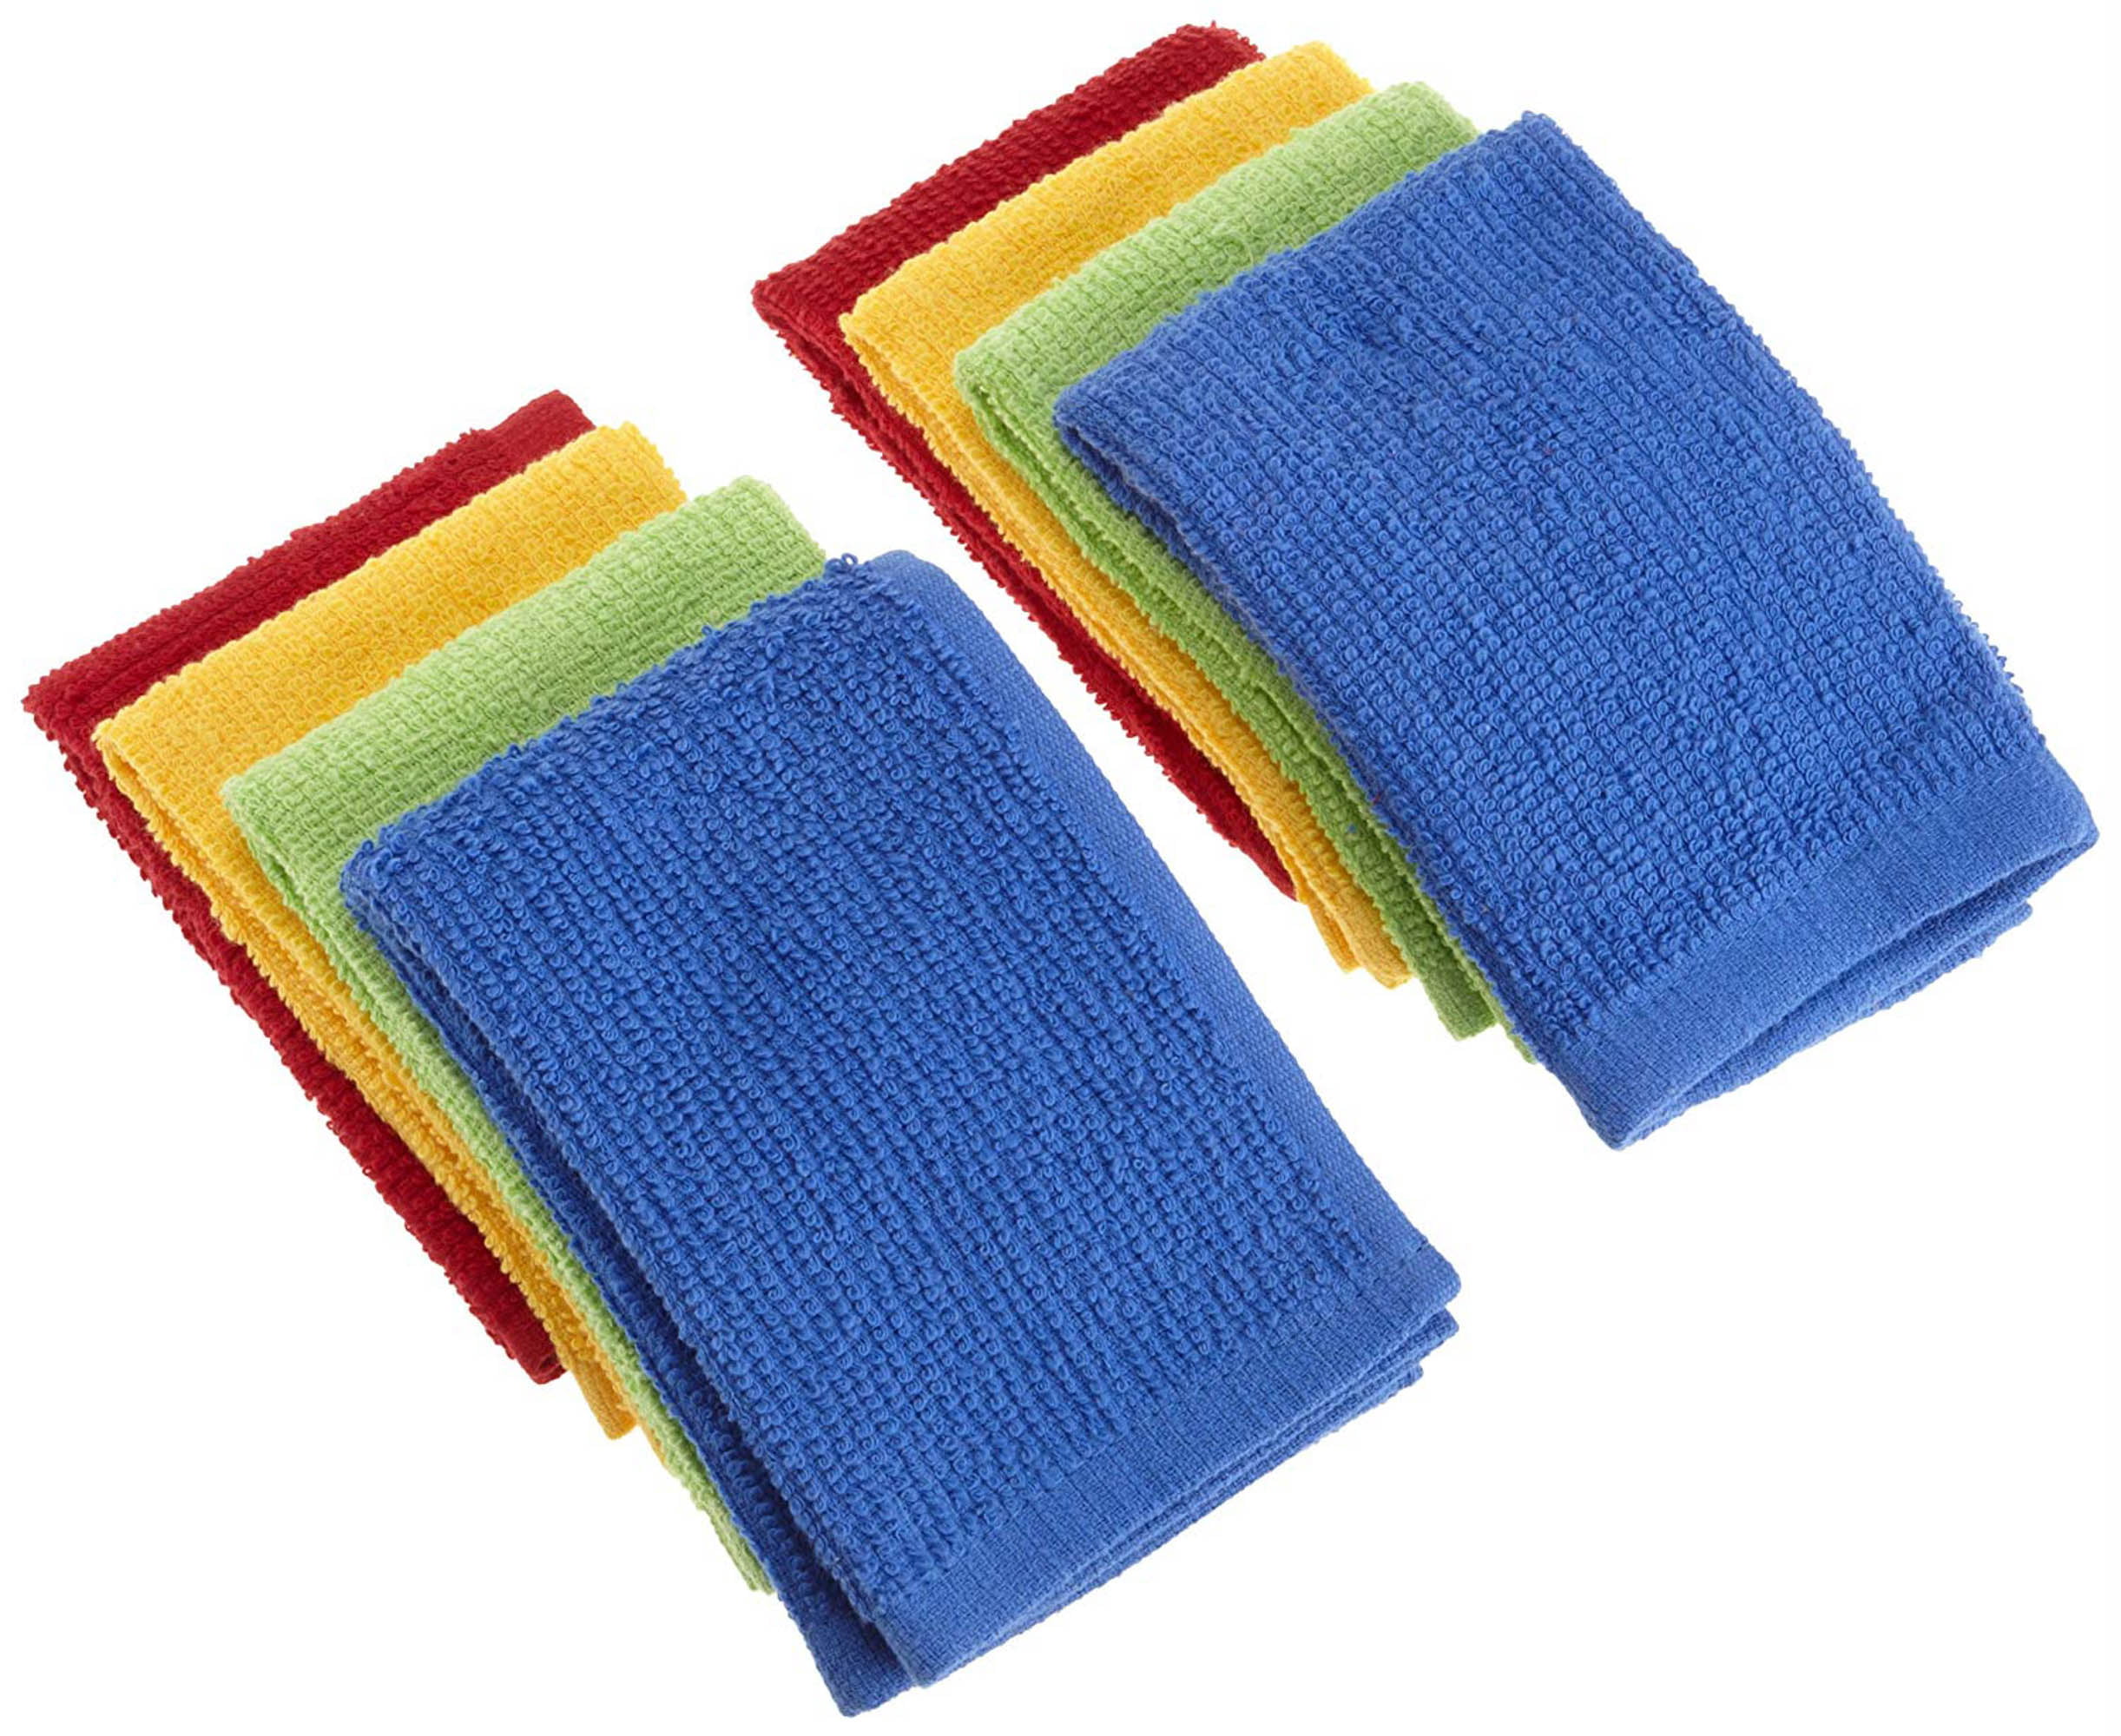 Lint Free Bar Mop Towel Flatpack